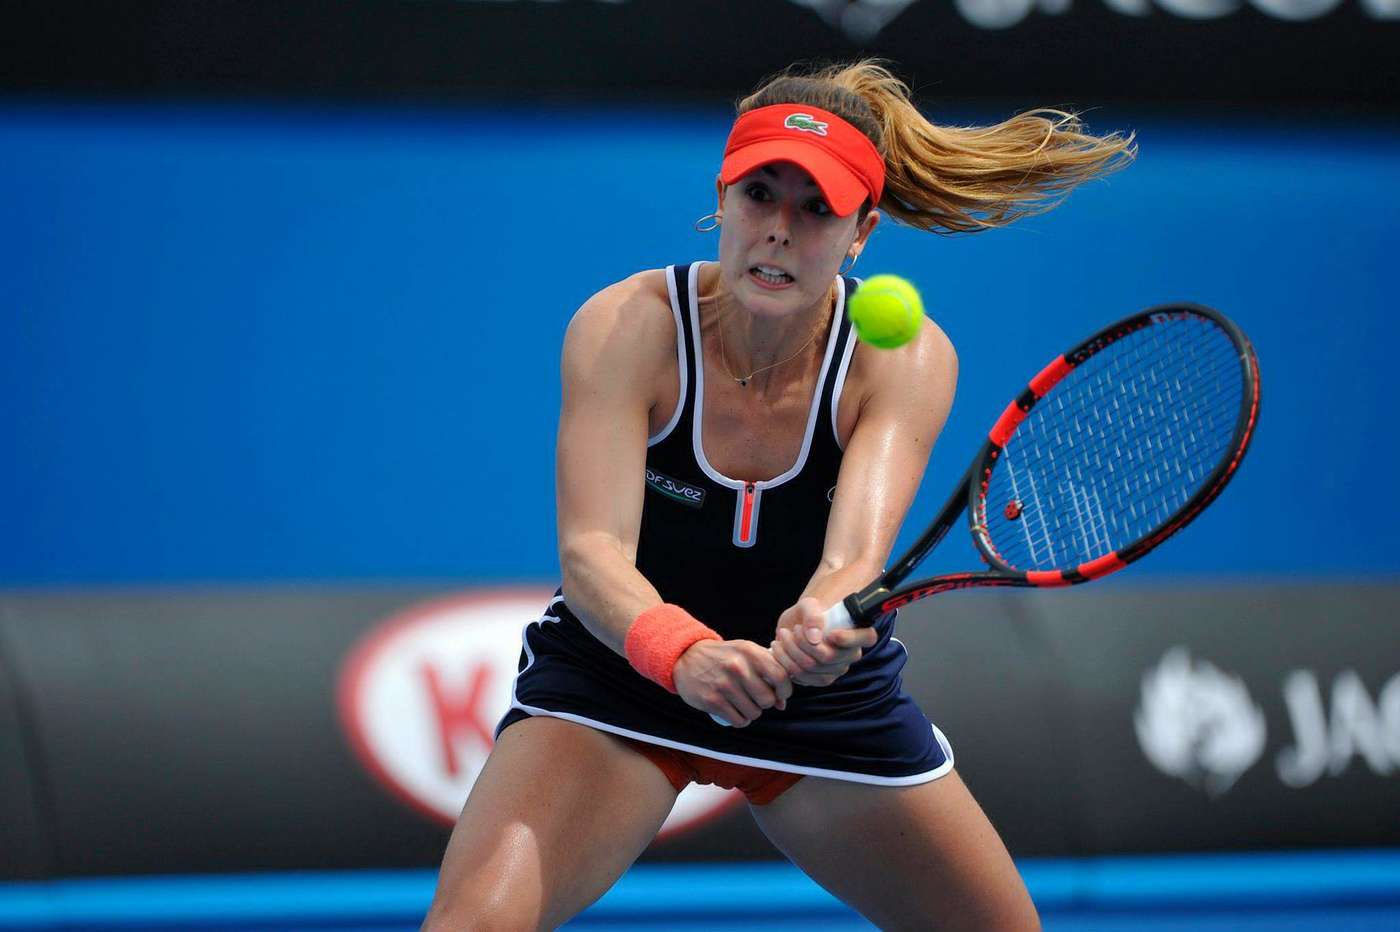 Alize Cornet 2015 : Alize Cornet: 2015 Australian Open -11. 